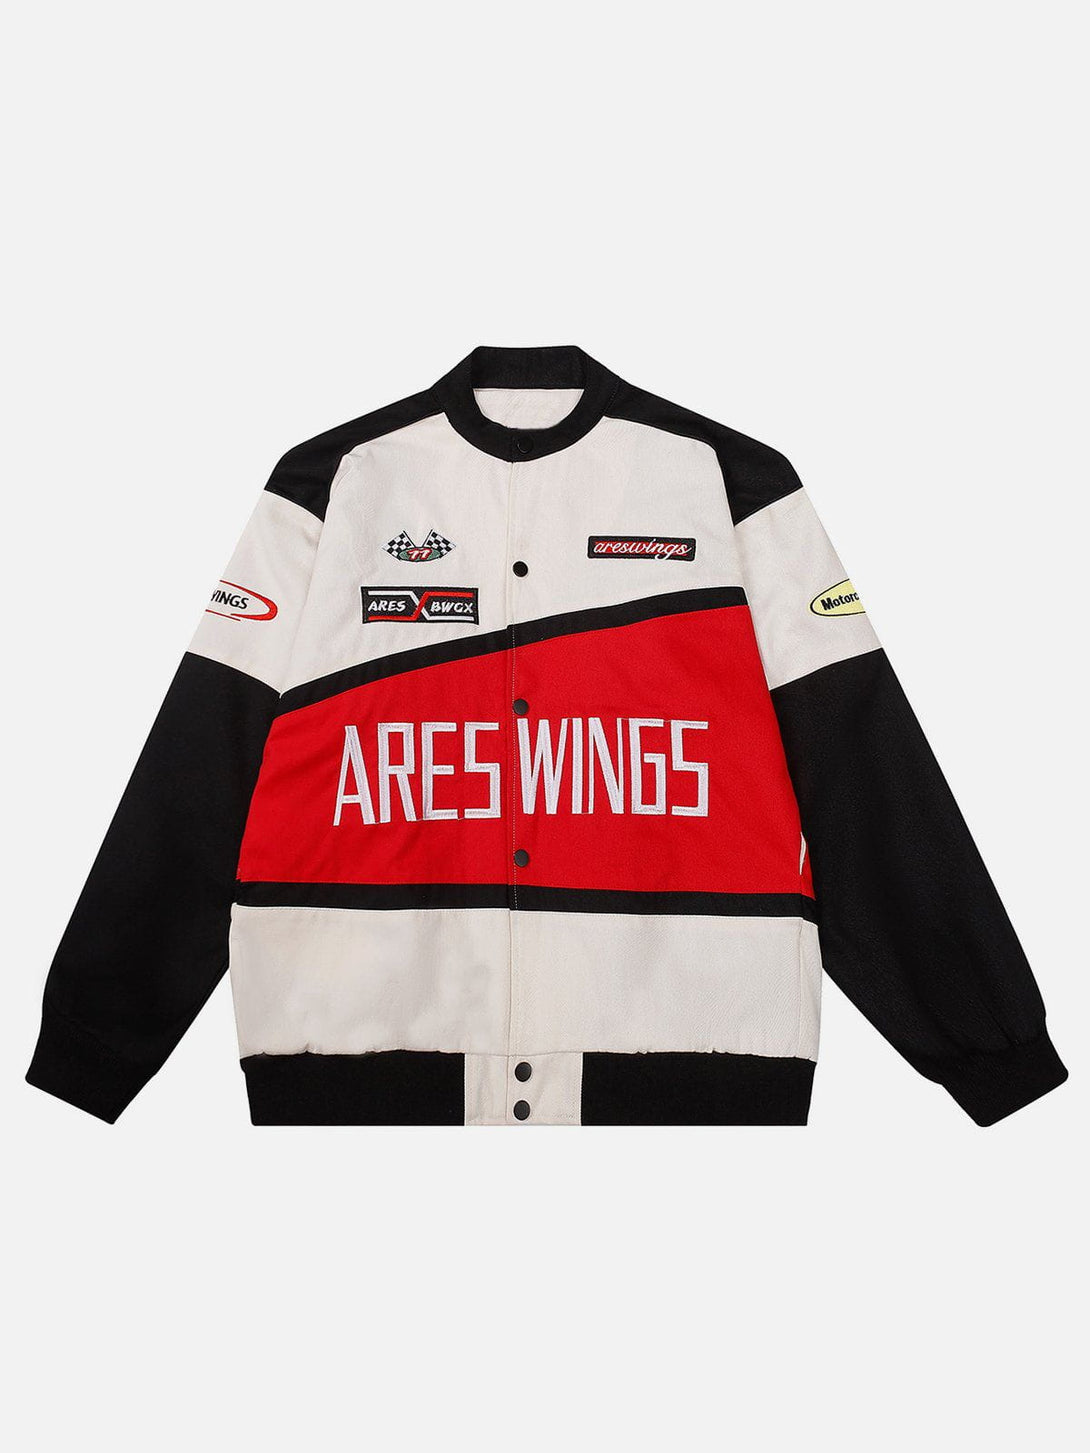 AlanBalen® - "ARES WINGS" Patchwork Racing Jacket AlanBalen